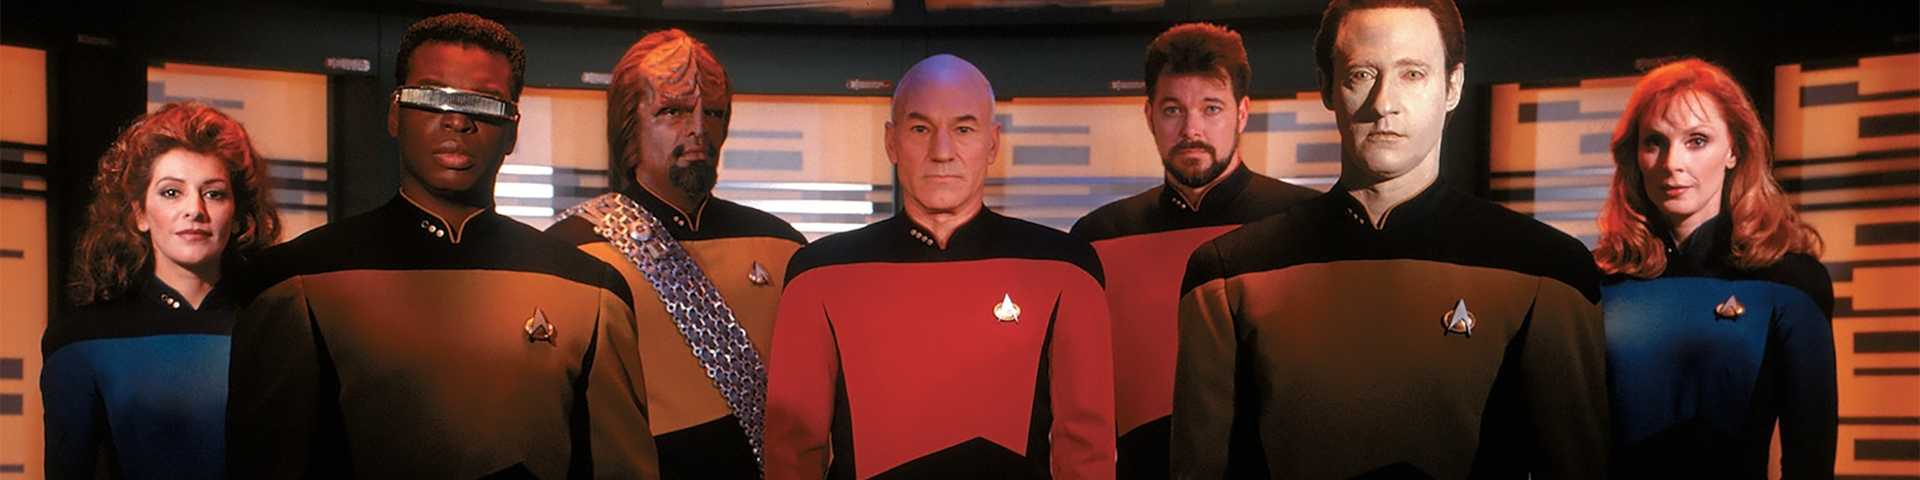 „Star Trek“, једина утопија која се није осрамотила: Мора да негде постоји неки бољи  живот